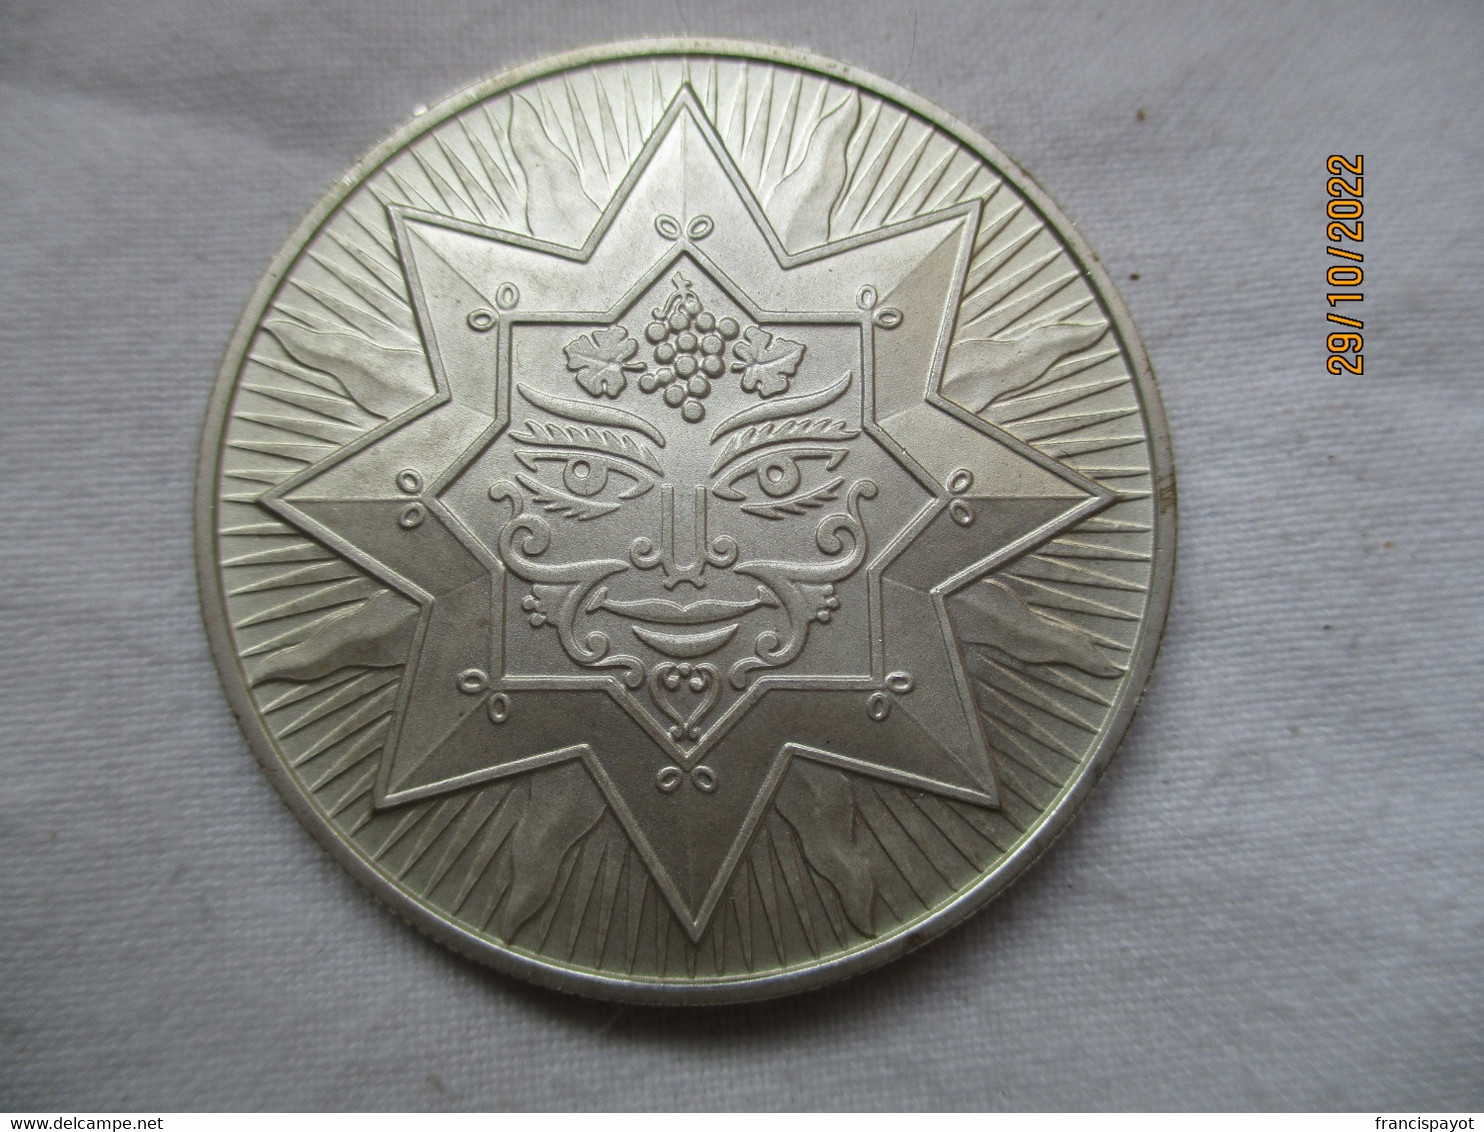 Suisse: Médaille Commémorative  Fête Des Vignerons 1977 - Professionals / Firms